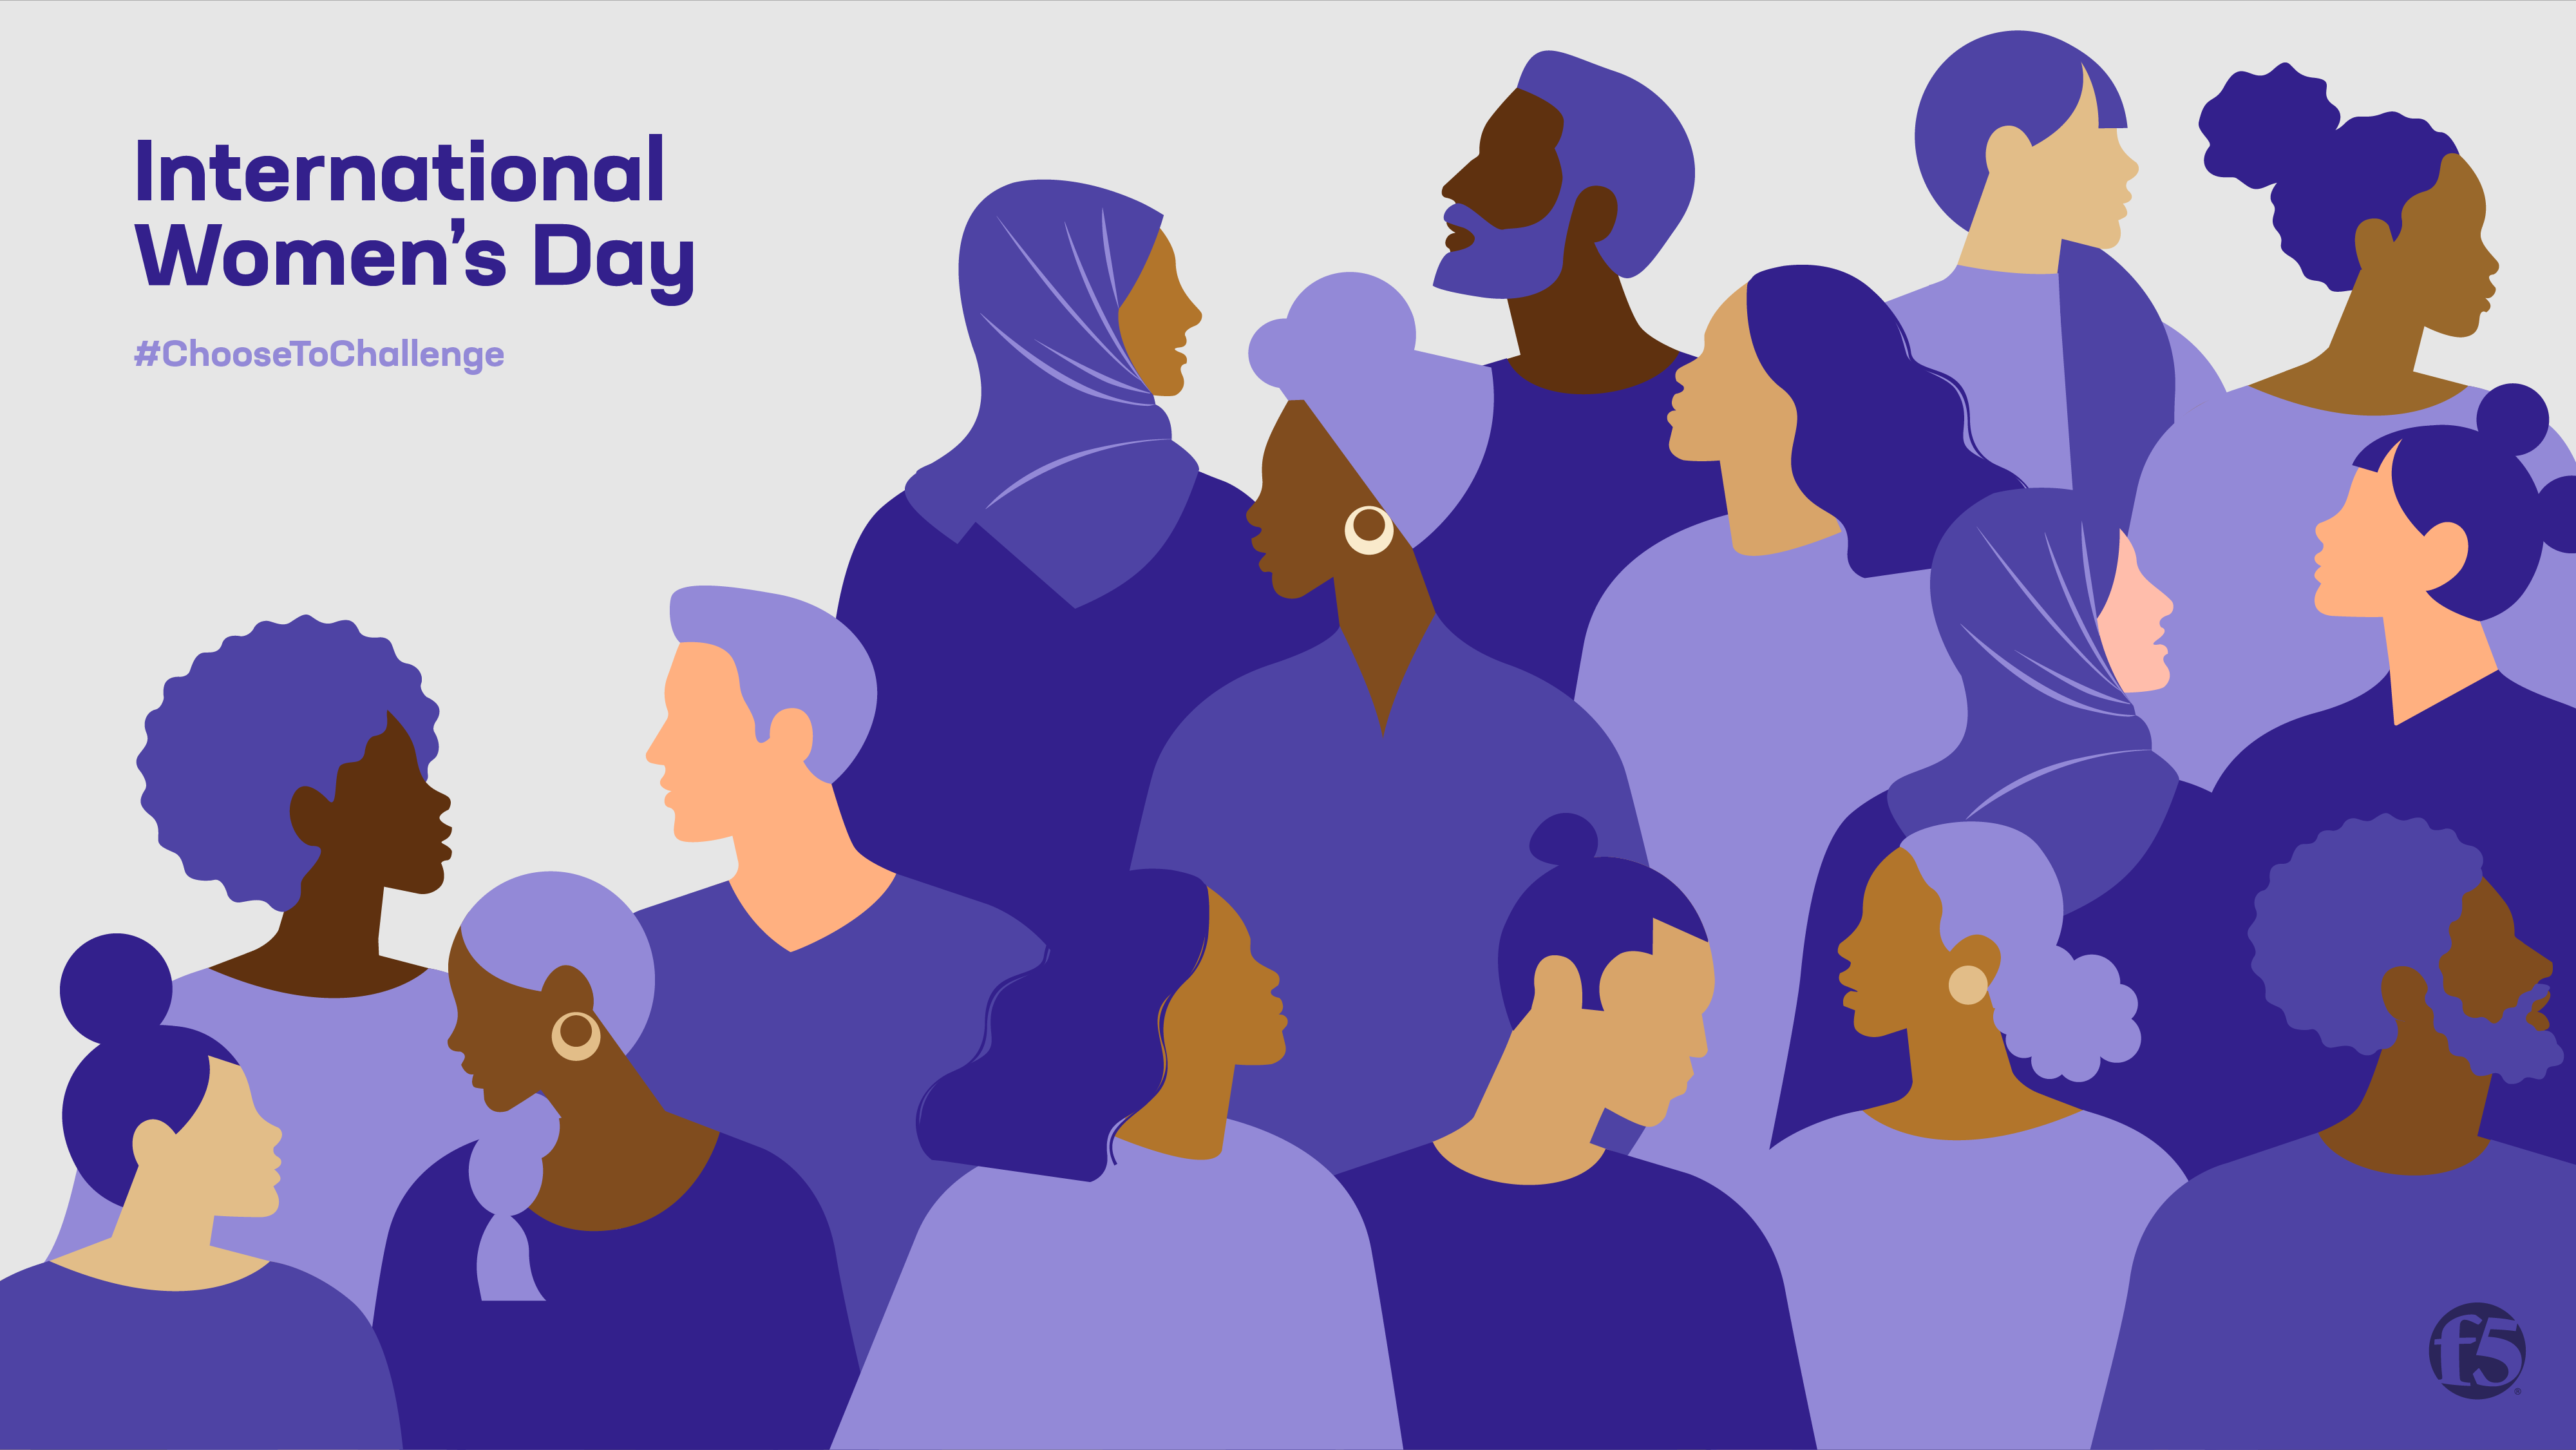 Ngày Quốc tế Phụ Nữ là ngày để chúng ta tôn vinh vai trò và đóng góp của phụ nữ trong cuộc sống và xã hội. Hãy xem hình ảnh liên quan để khám phá thêm về lịch sử và ý nghĩa của Ngày Quốc tế Phụ Nữ.